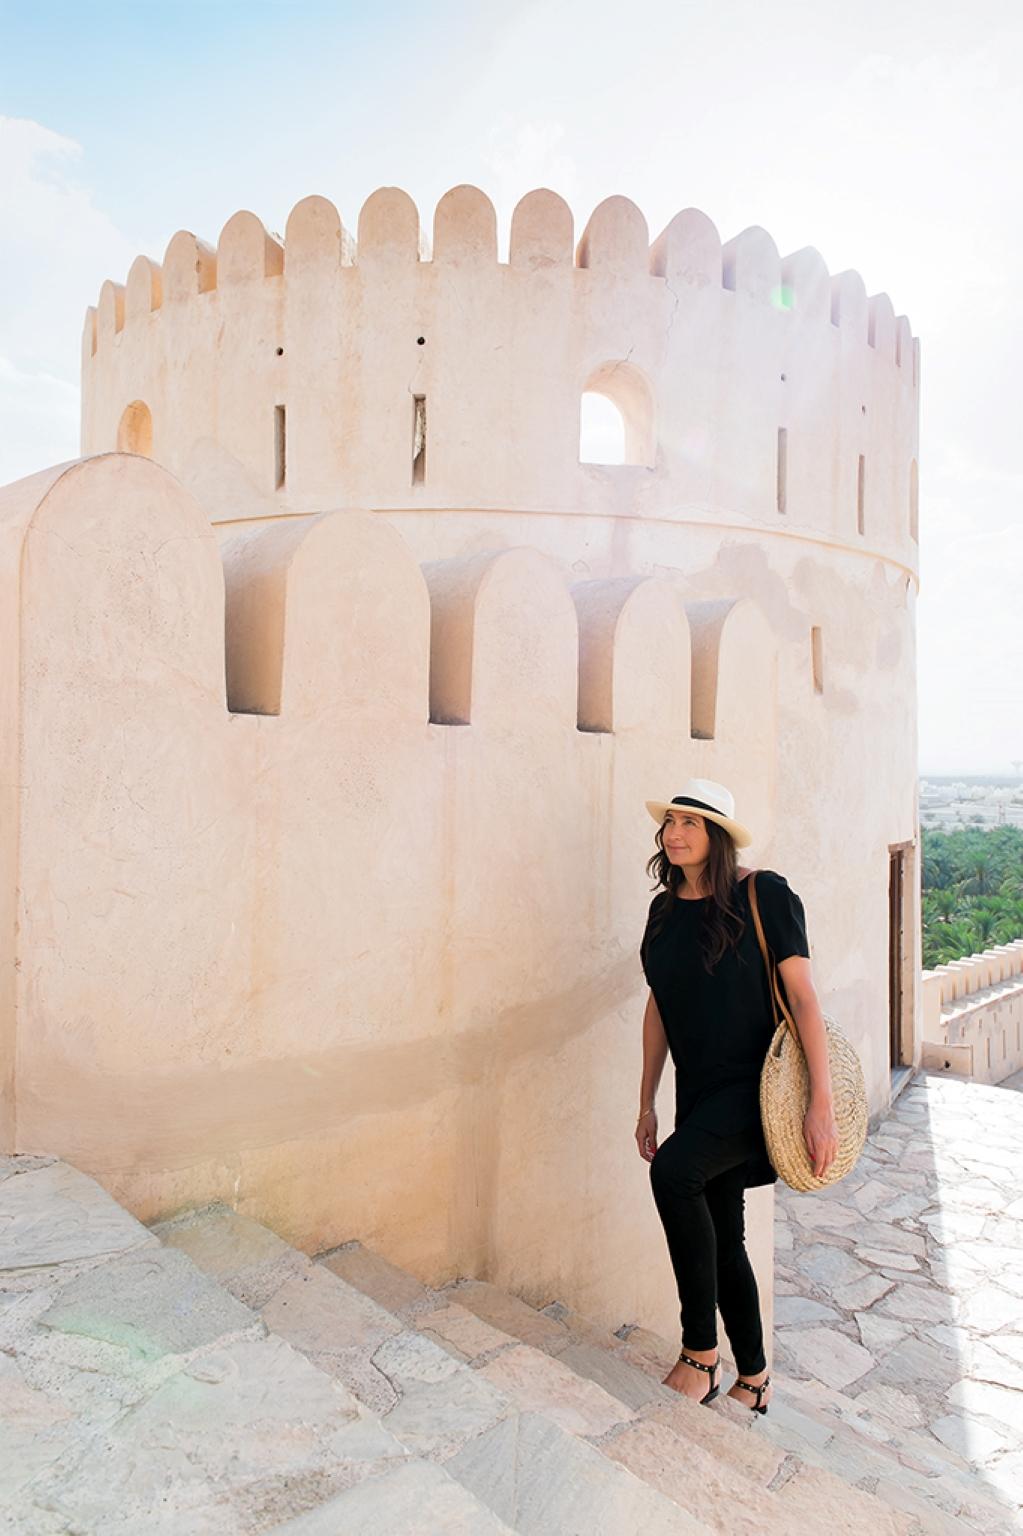 Inspiration 
Die Möbelfamilie Nizwa ist inspiriert von den abgerundeten Türmen der Festung Nizwa im Oman und dem Ombré-Farbeffekt, der durch das darauf fallende Sonnenlicht entsteht.

Handwerk 
Die italienischen Ahornfurniere werden sofort nach